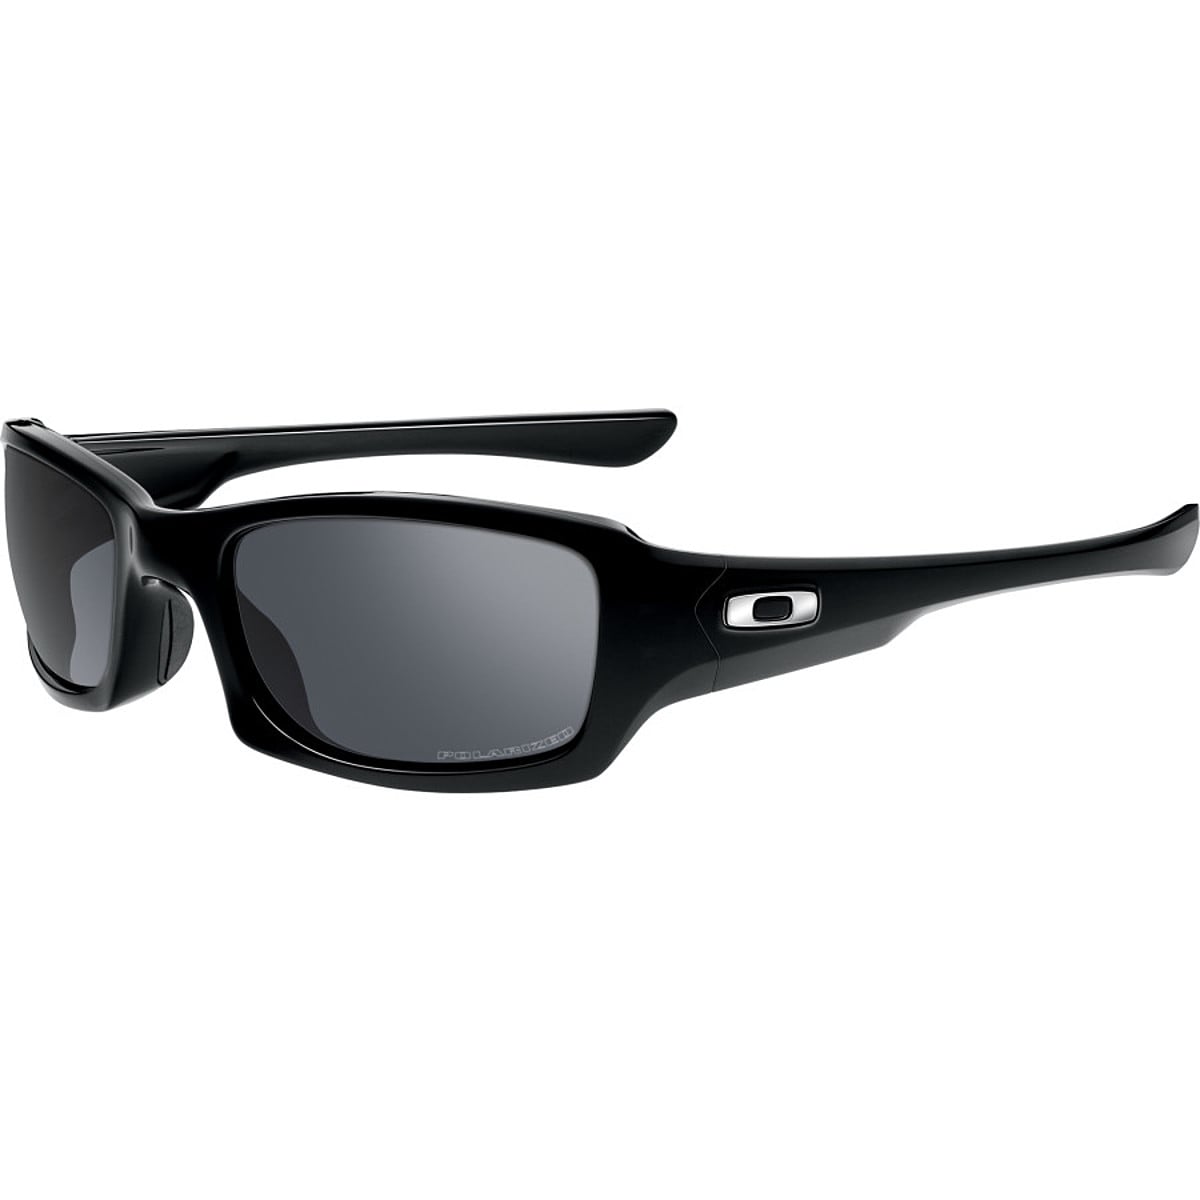 Поляризованные солнцезащитные очки fives squared Oakley, цвет polished black/black iridium polarized поляризационные солнцезащитные очки oo9301 61 cohort oakley